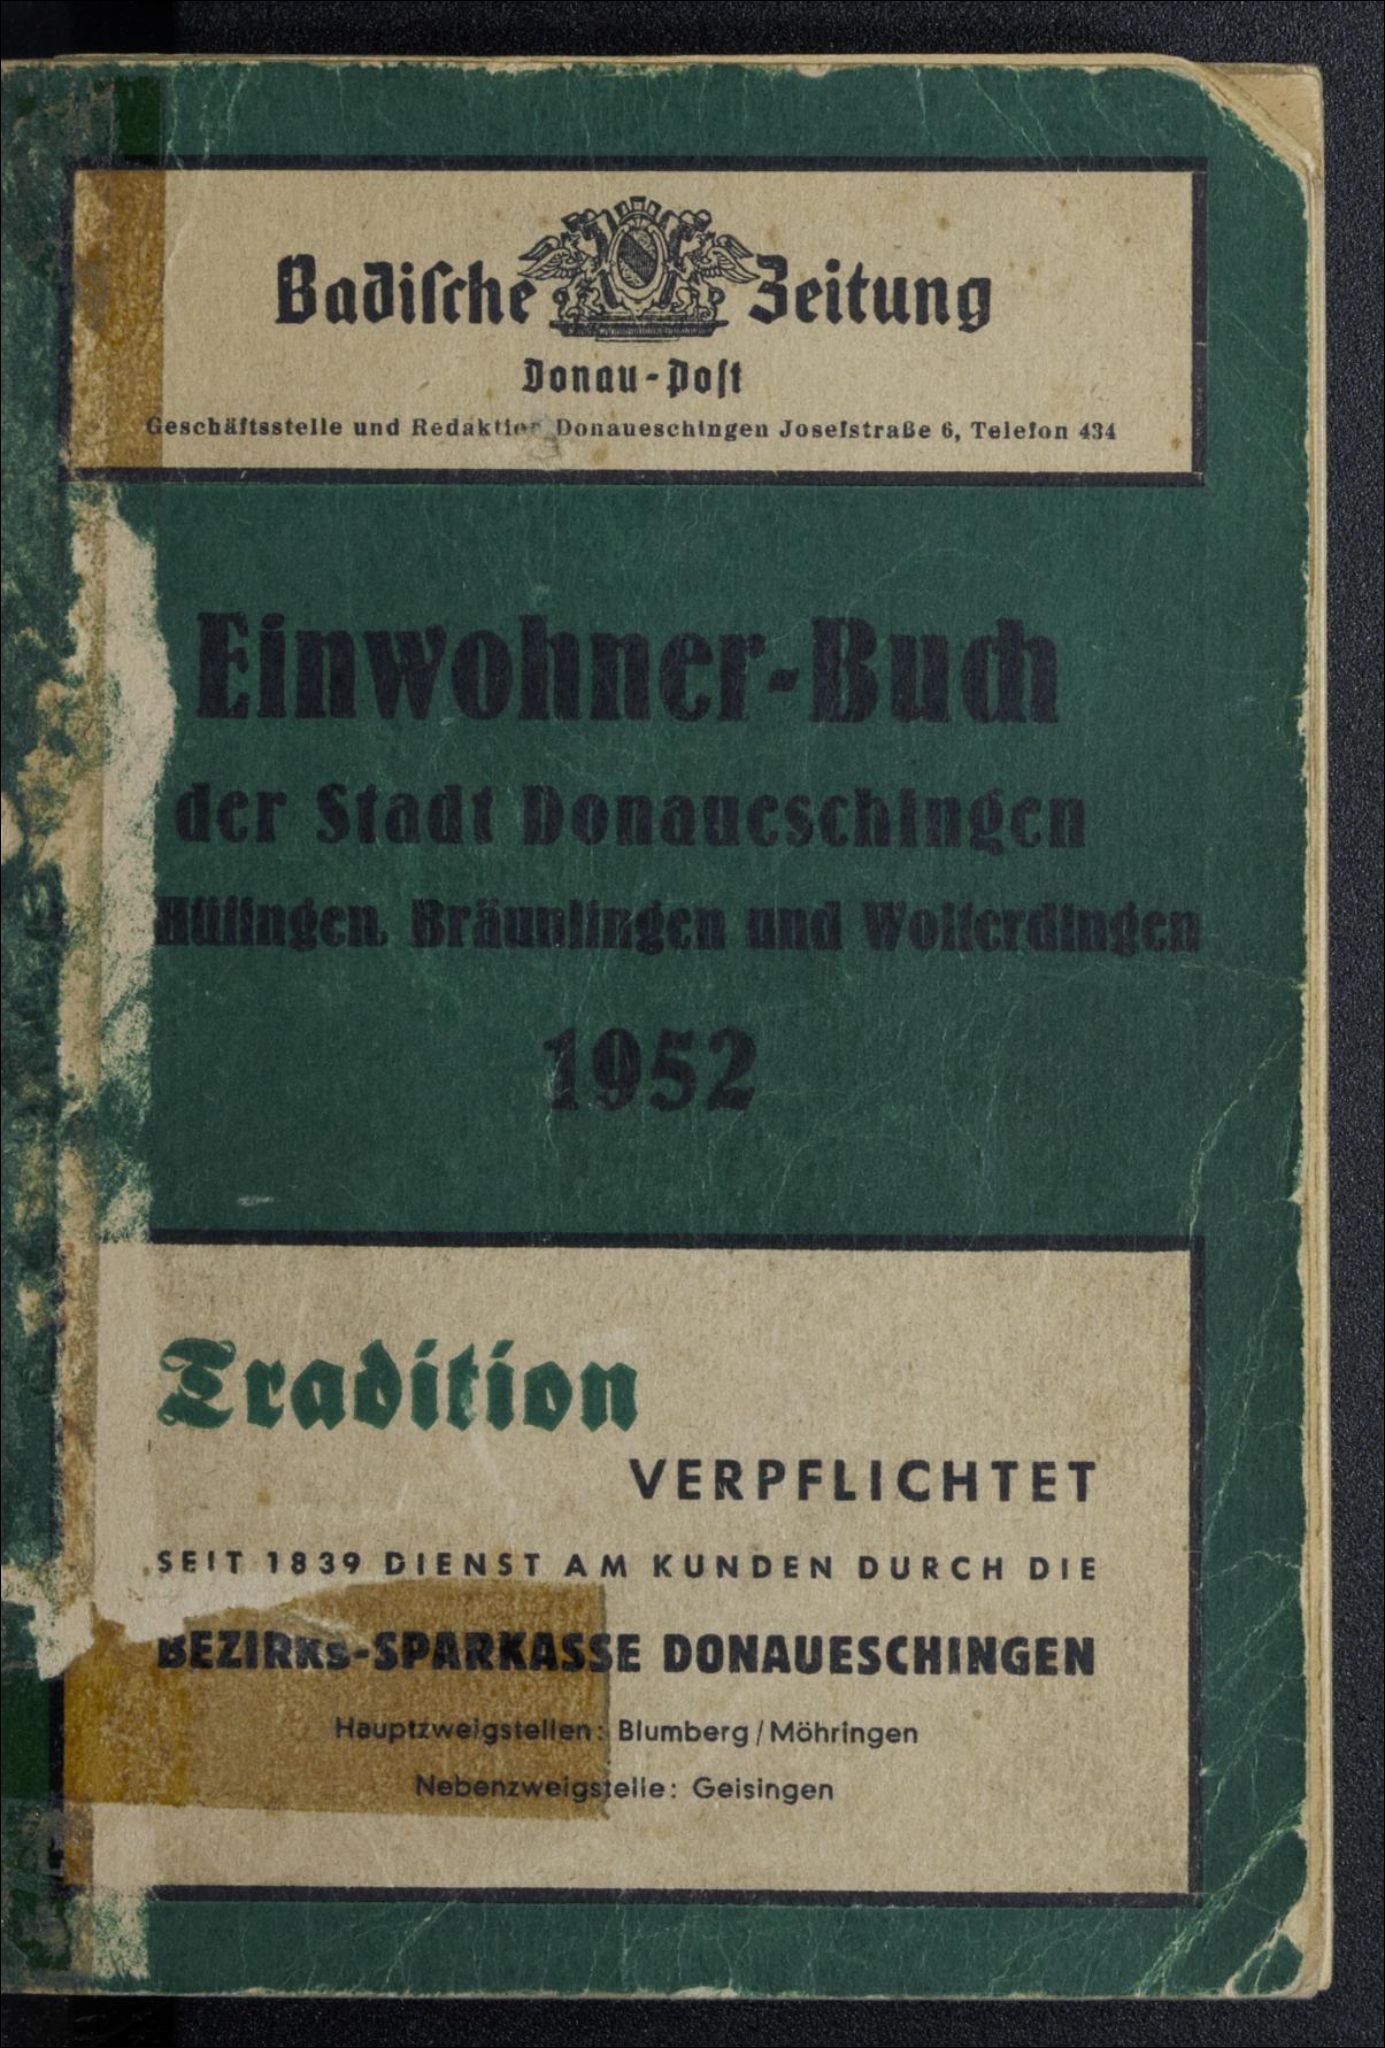 Einwohnerbuch der Stadt Donaueschingen mit den Orten Hüfingen, Bräunlingen, Wolterdingen 1952